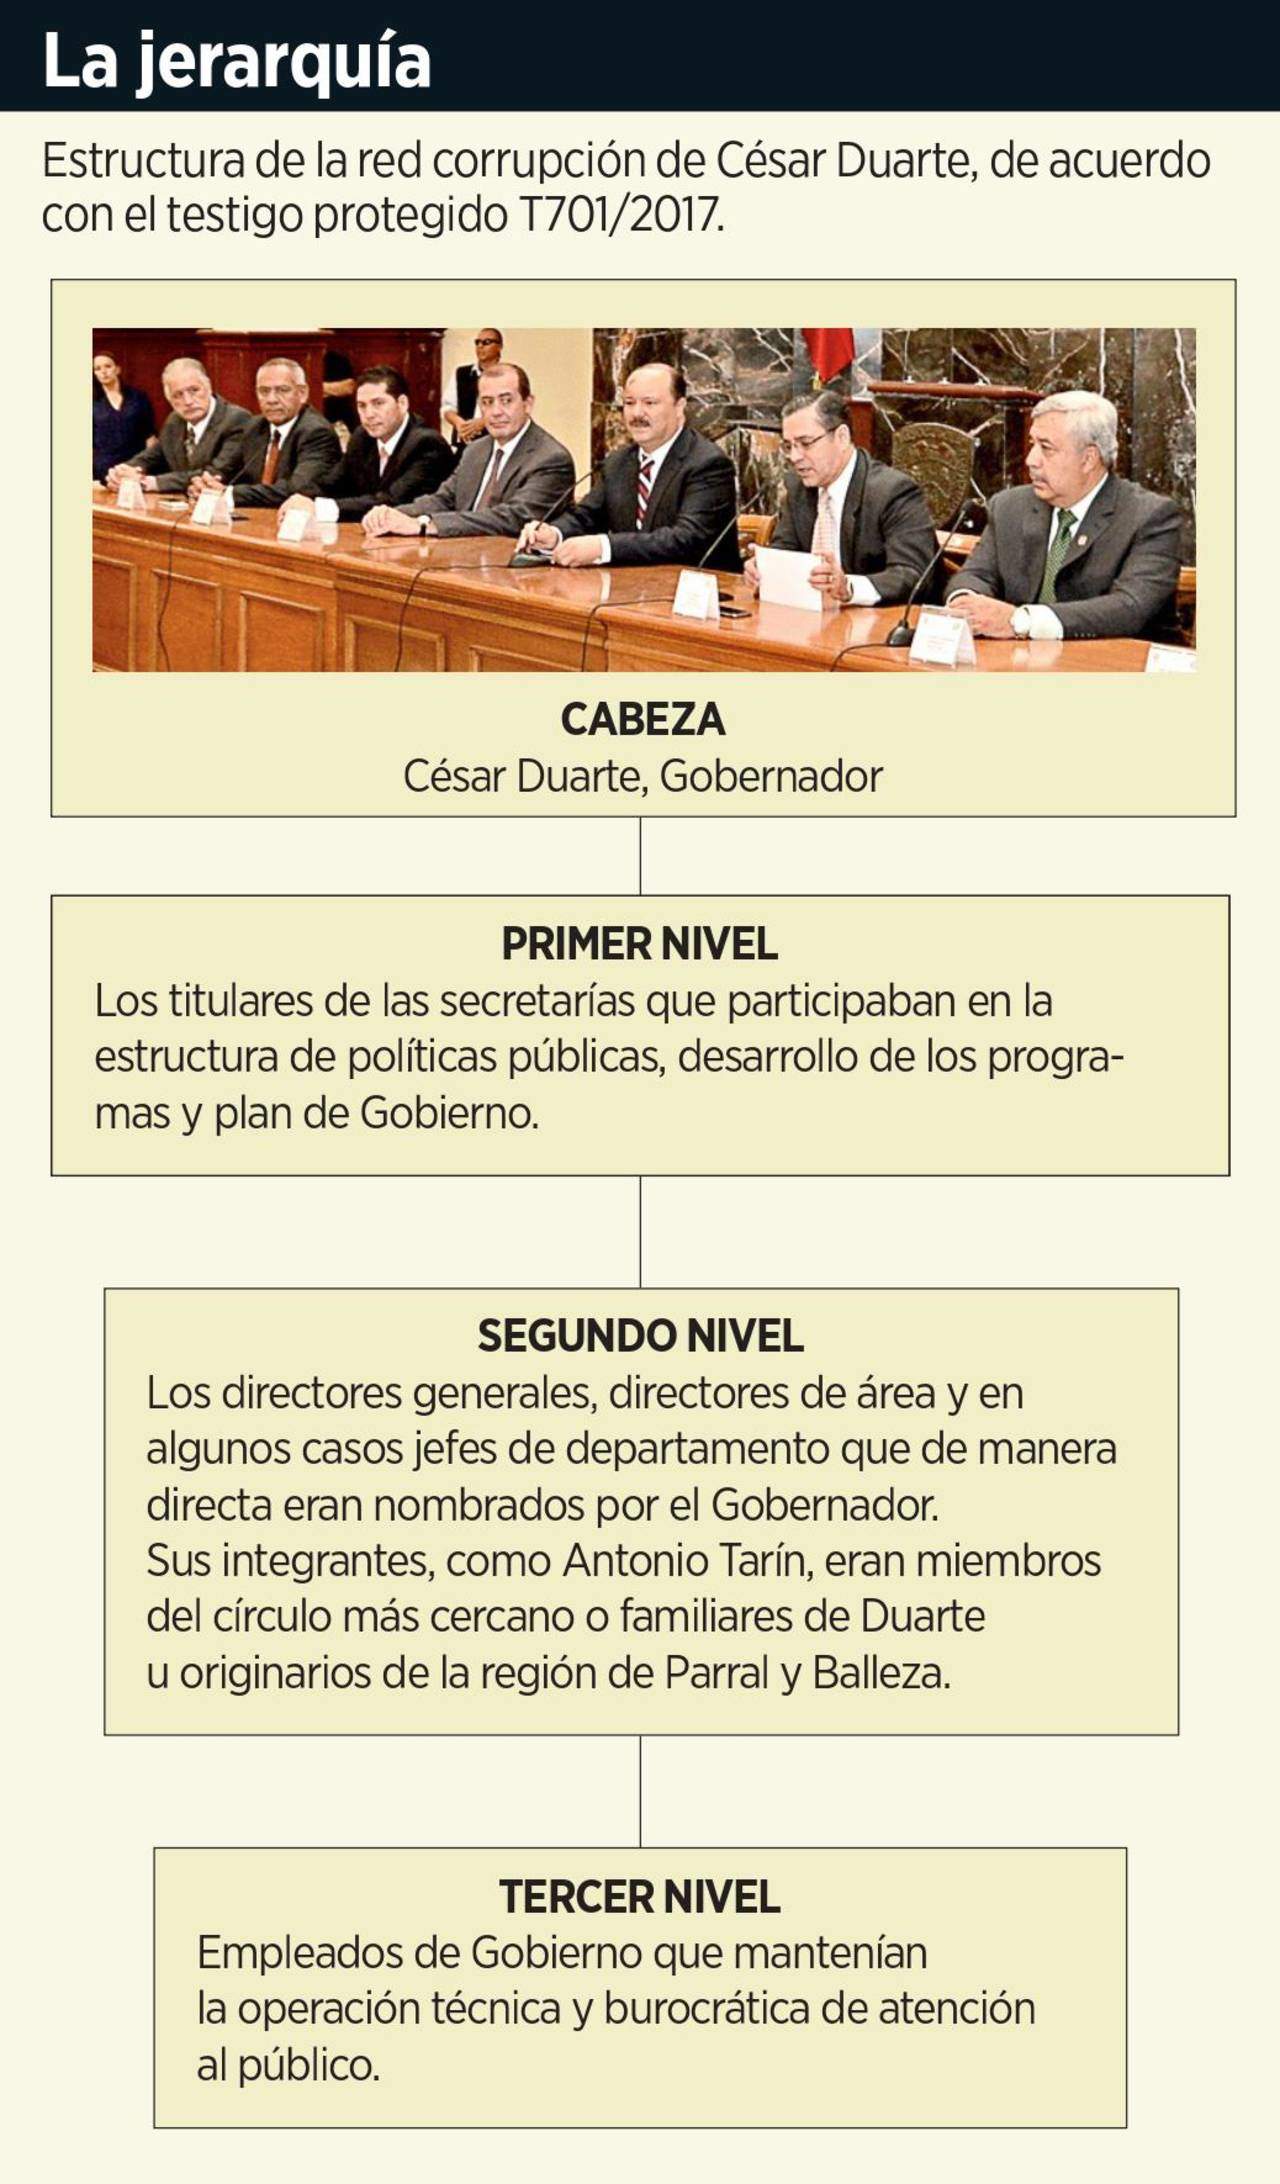 César Duarte dirigía su red de corrupción